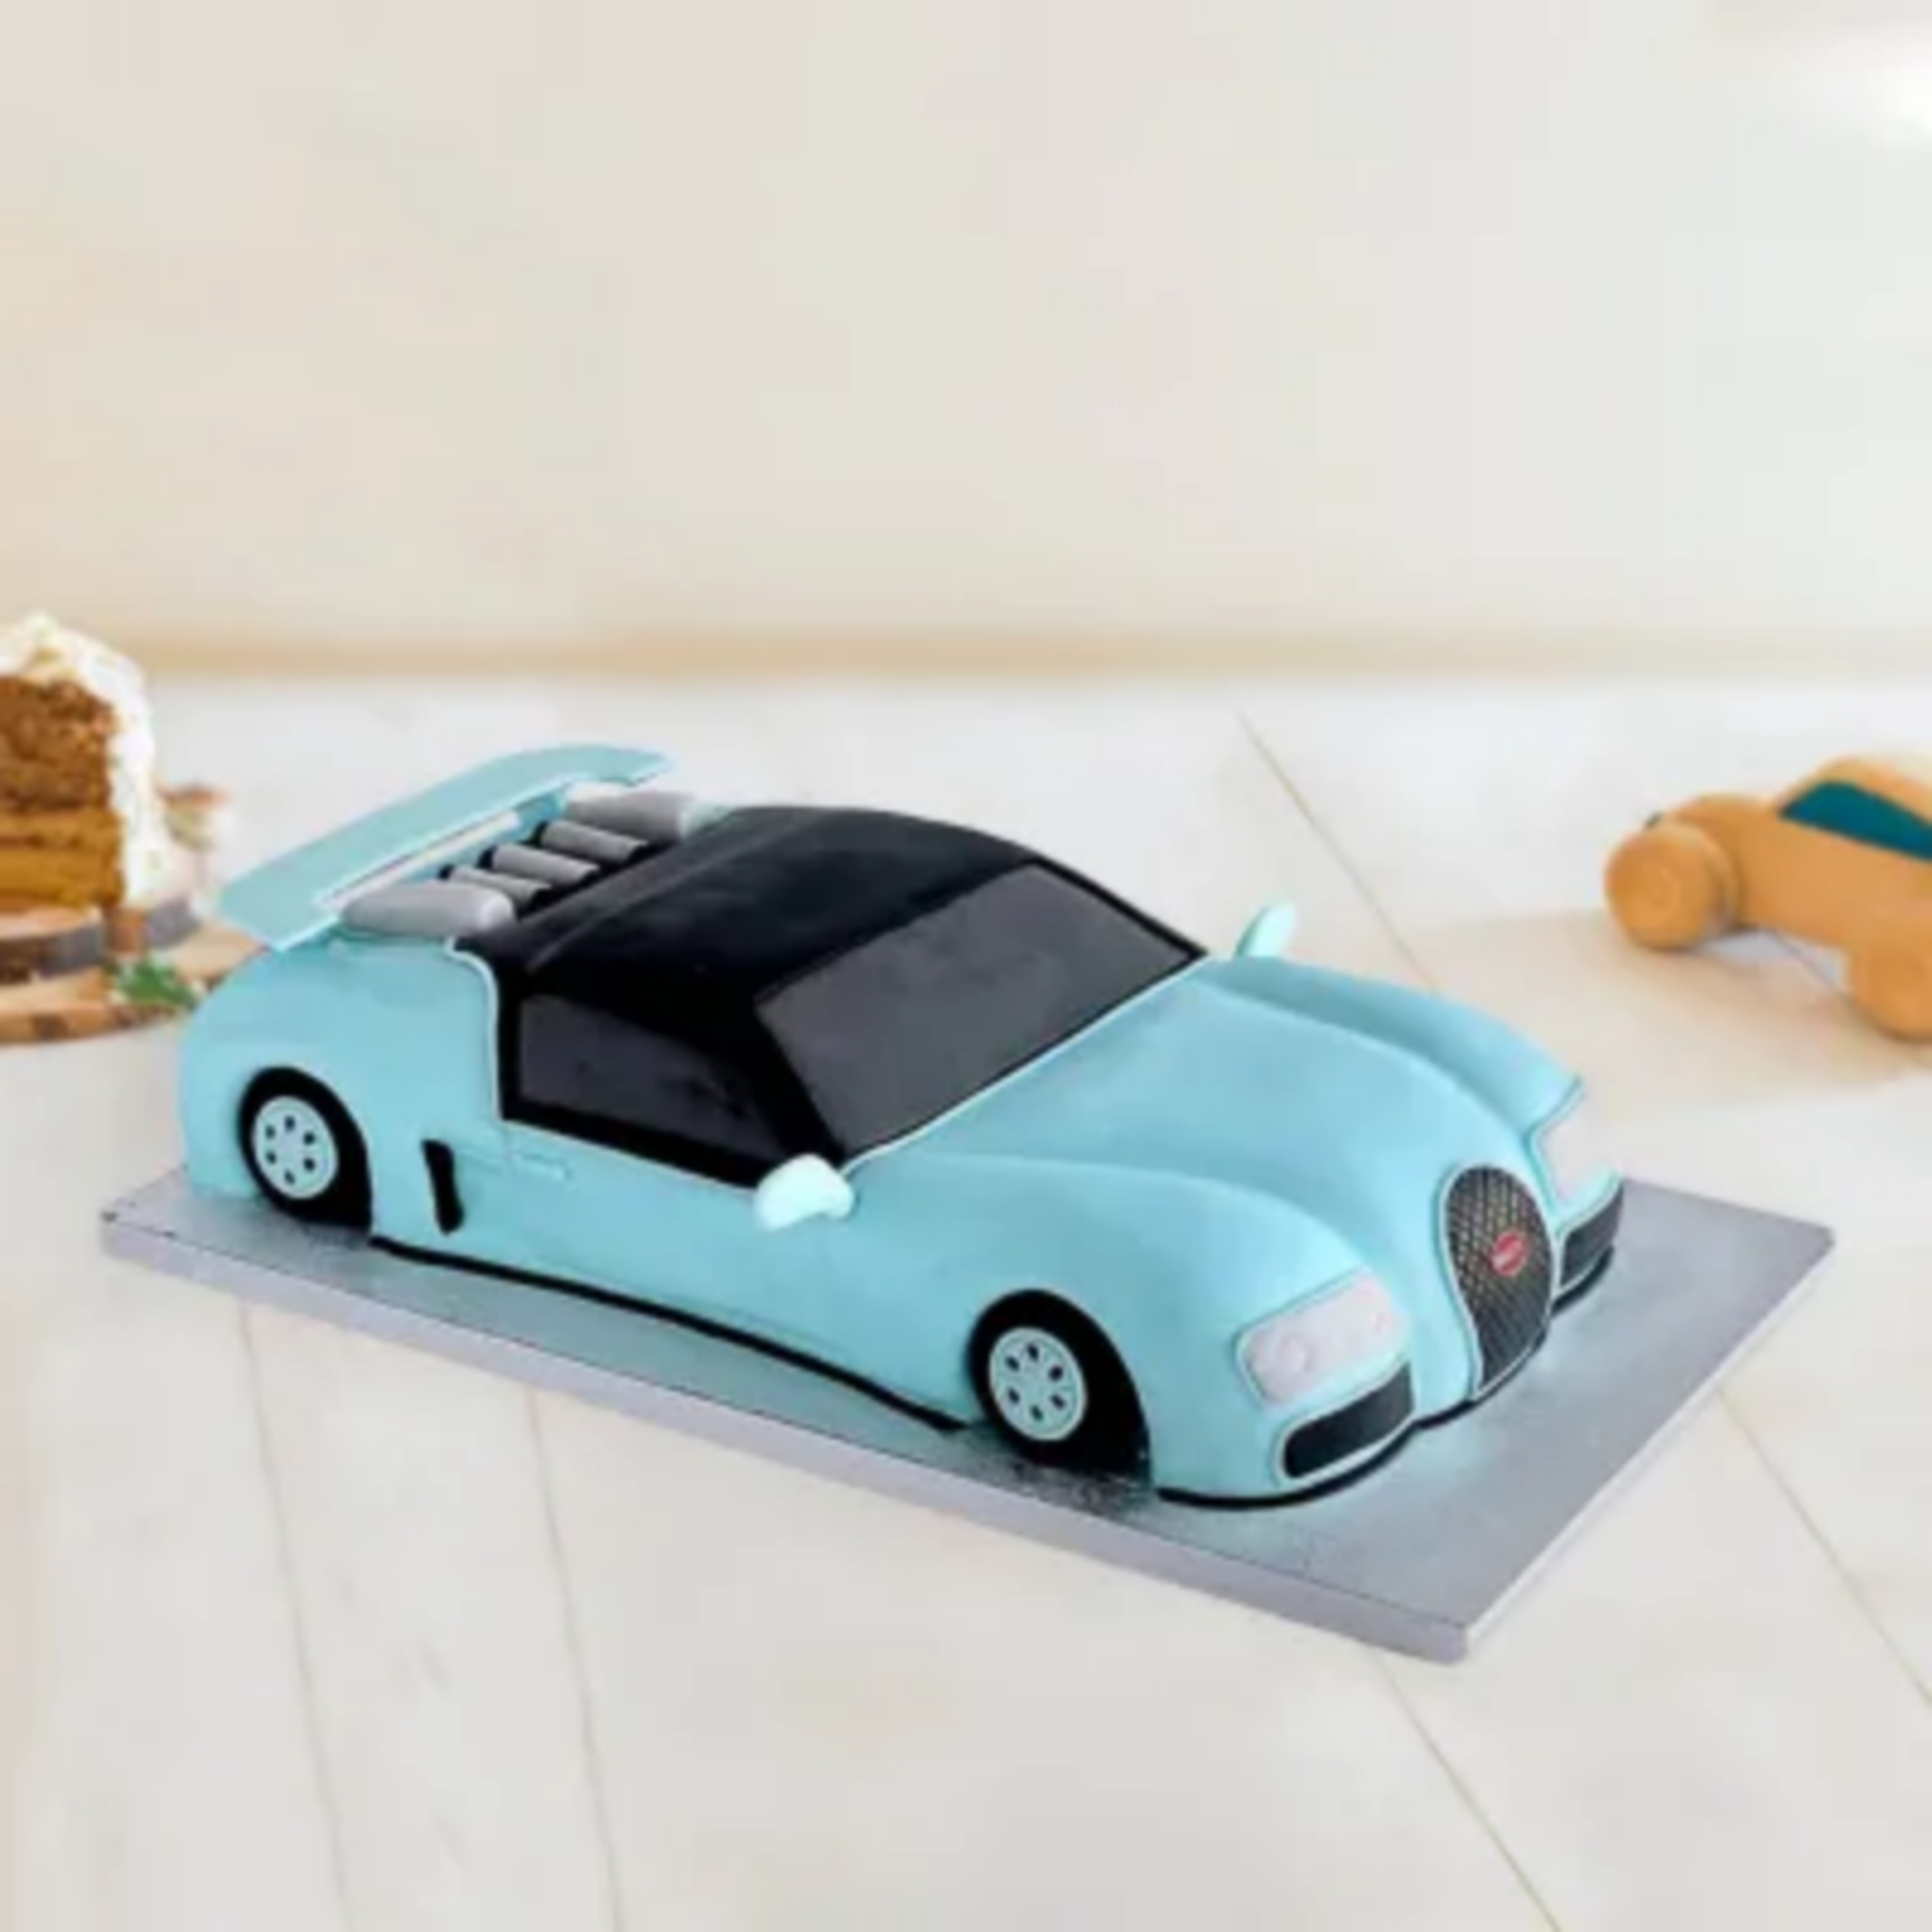 Car Cake  Car Shape Cake  Car Theme Cake  Yummy Cake